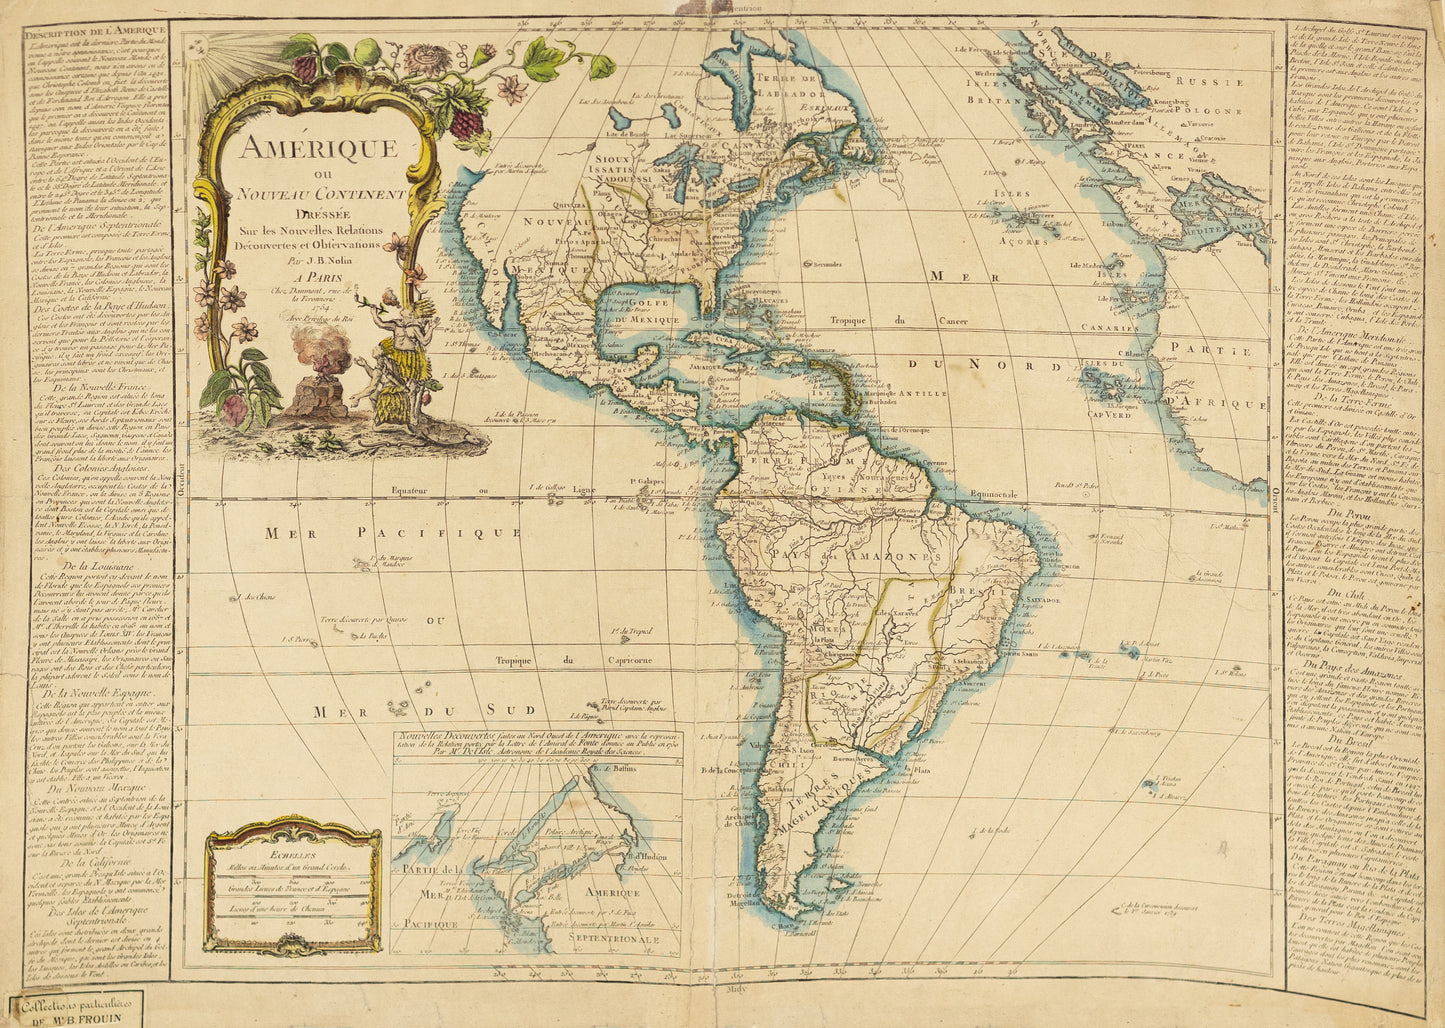 Nolin, J.B. Amerique ou Nouveau Continent... Paris, 1754.